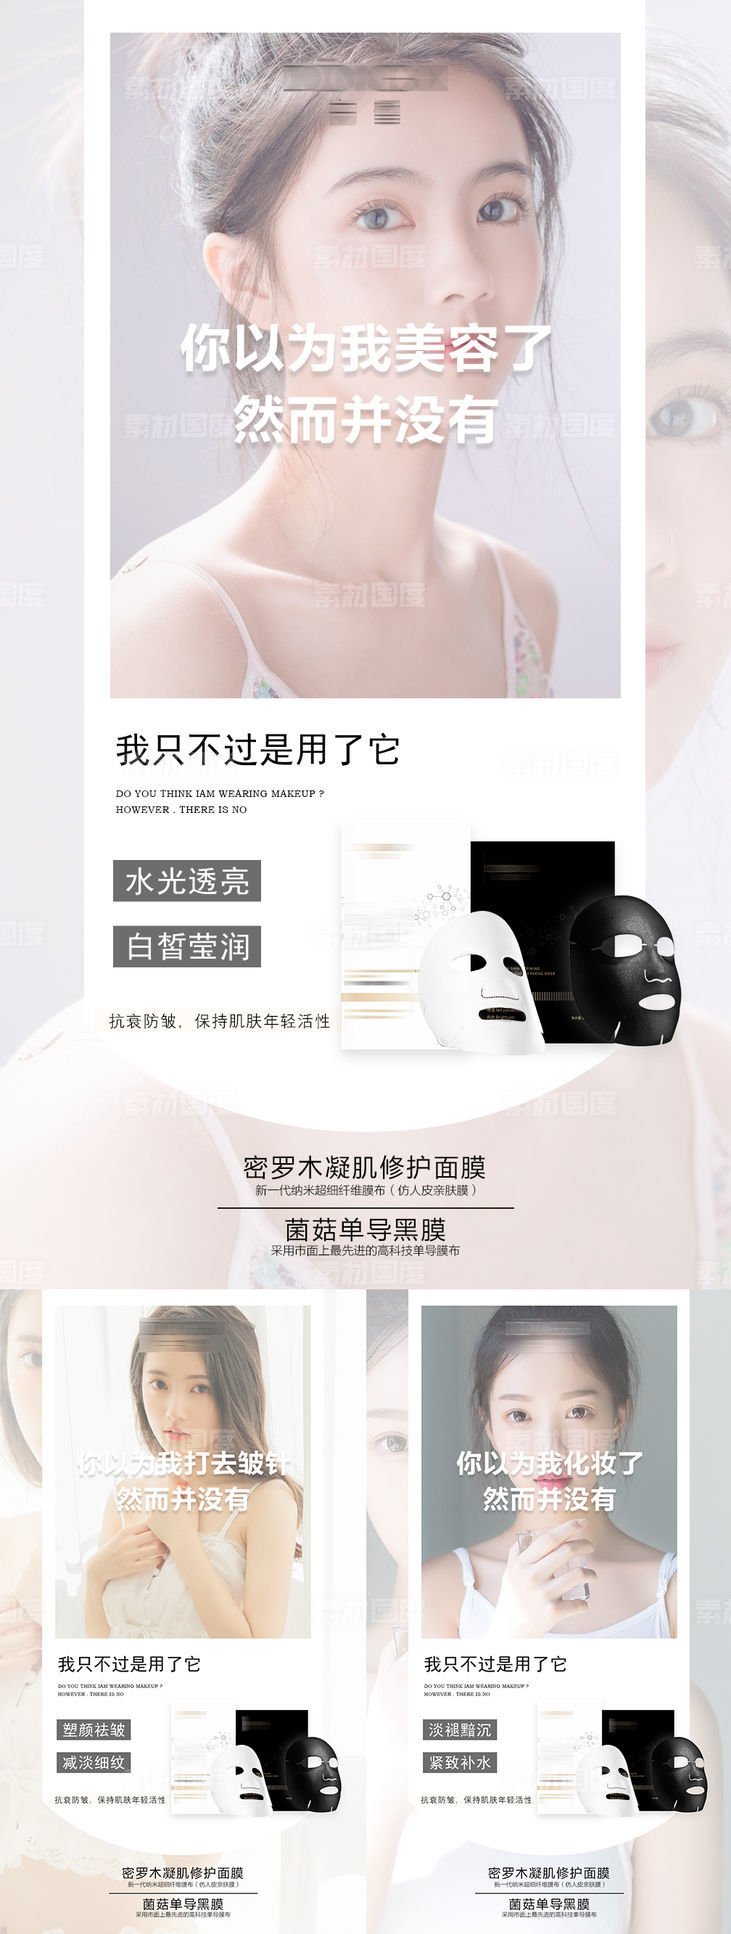 女性面膜产品护肤宣传系列海报